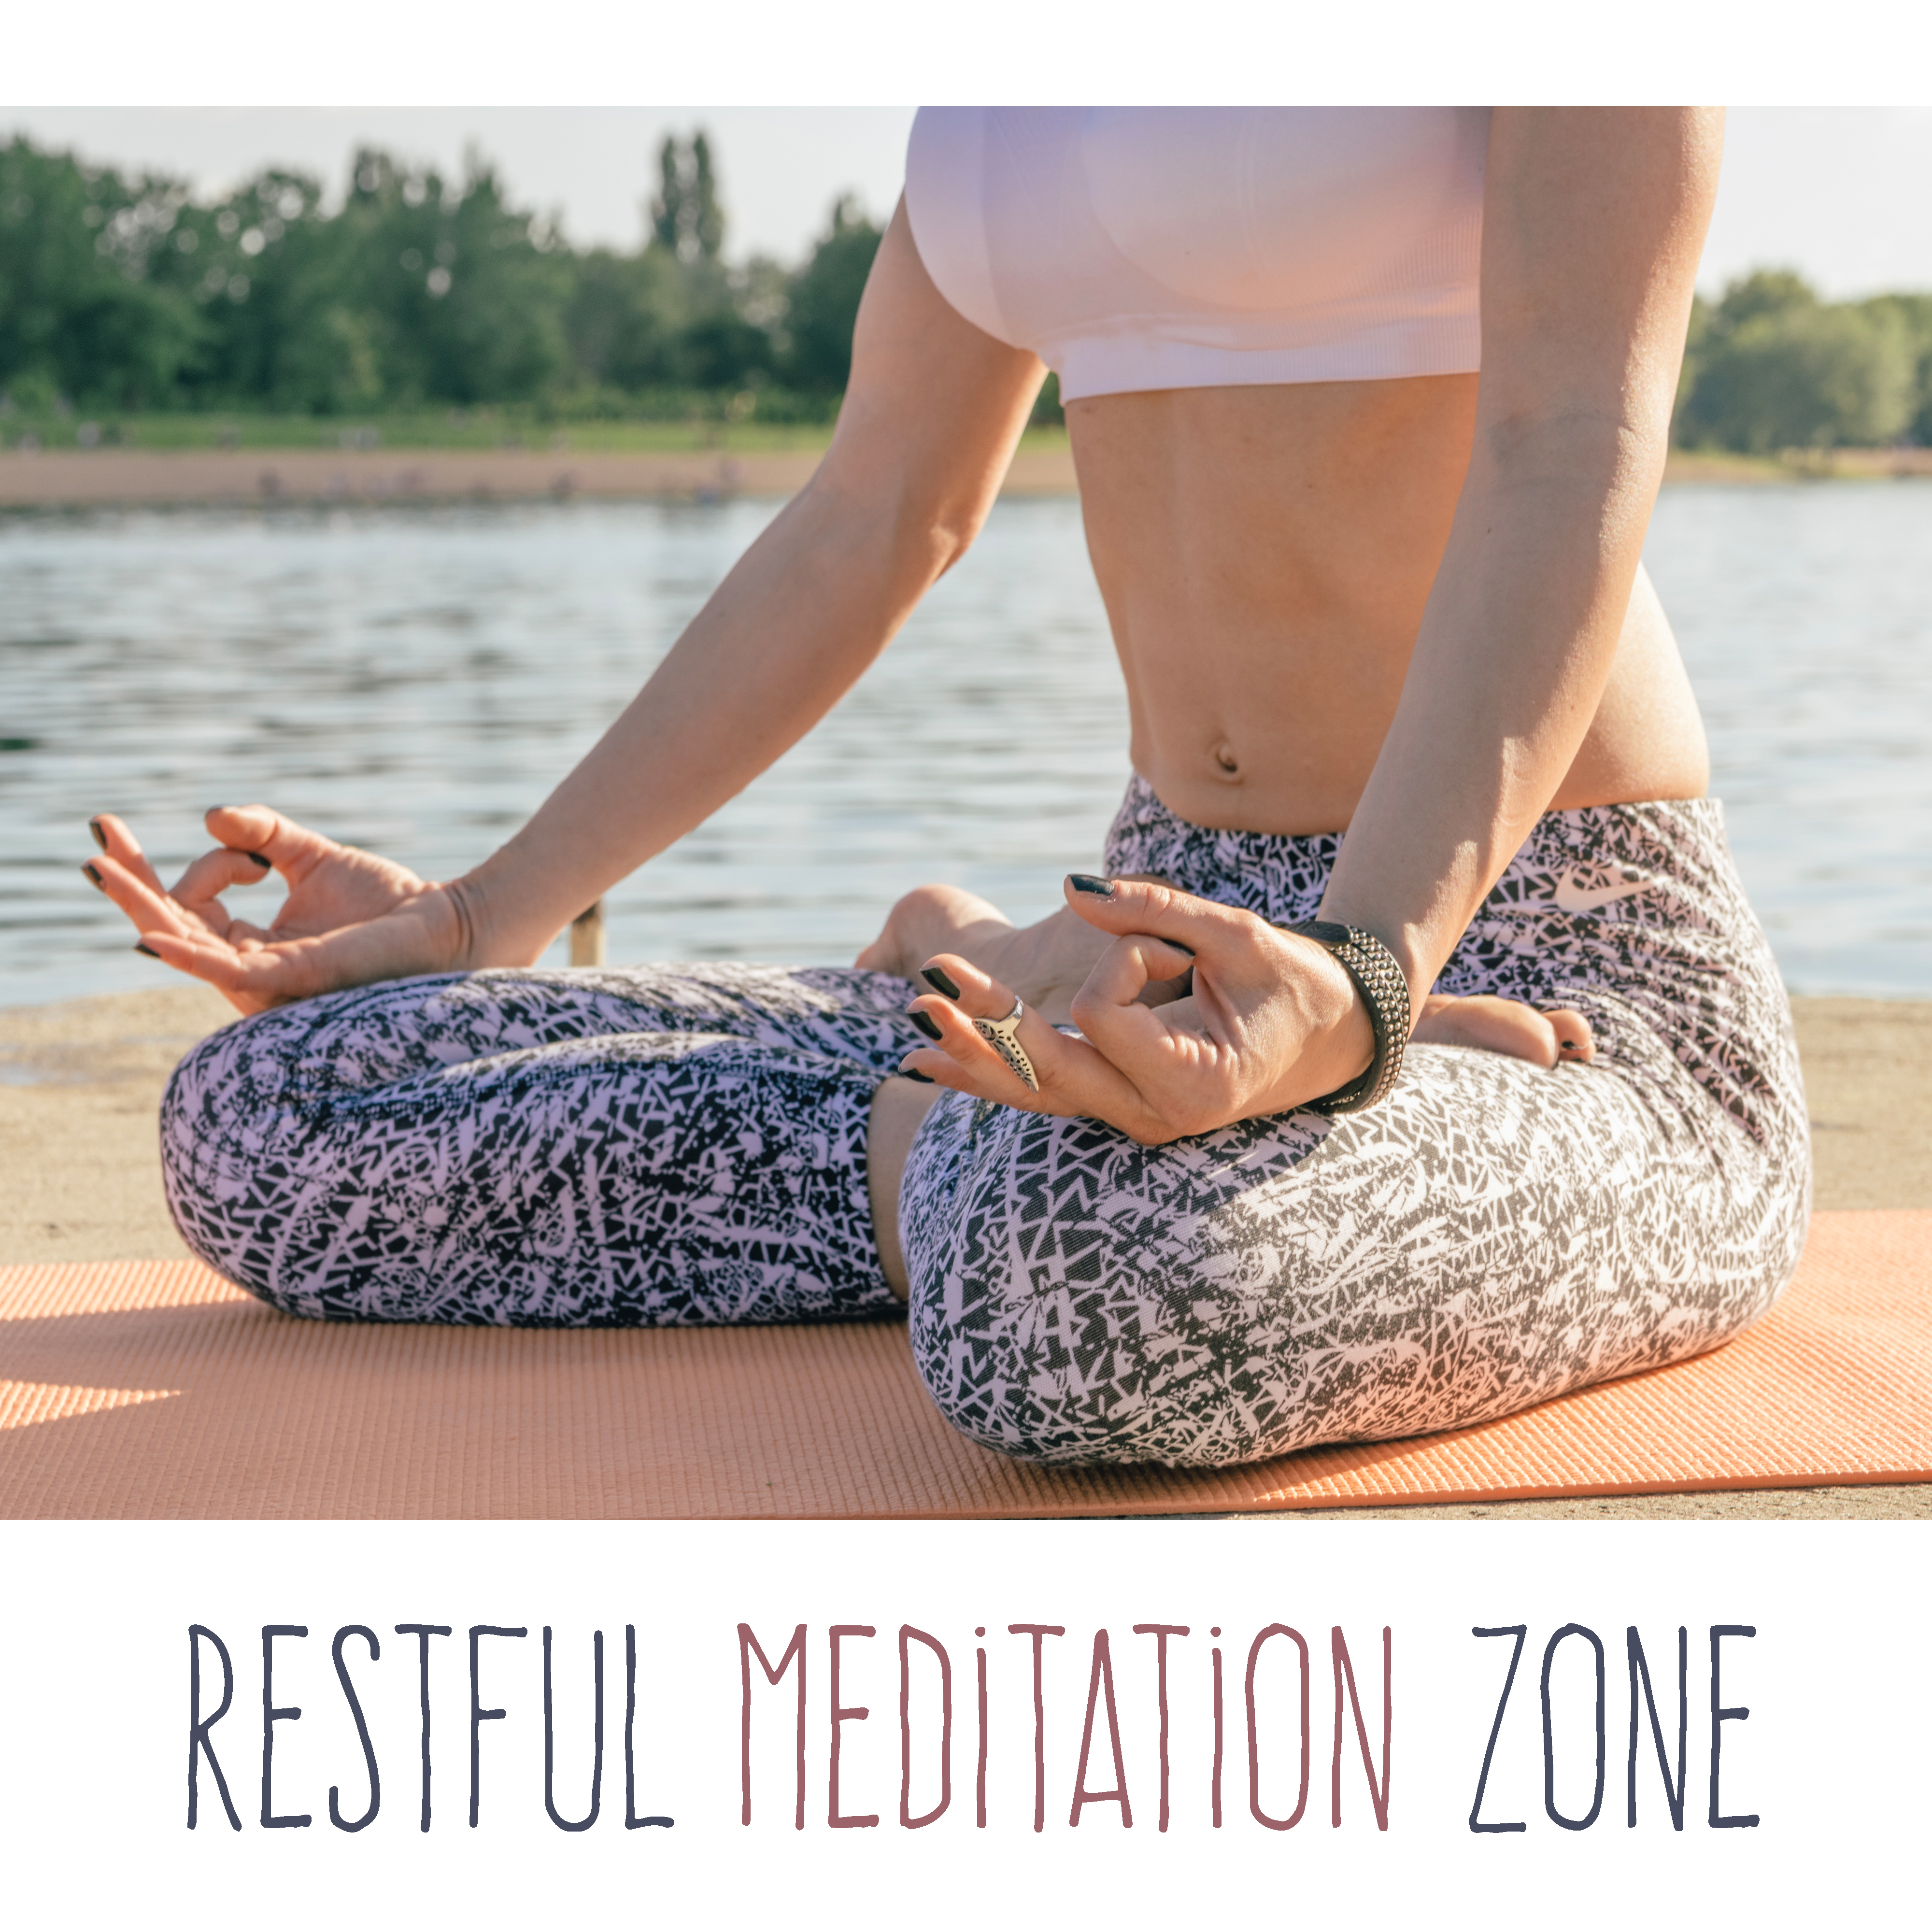 Restful Meditation Zone